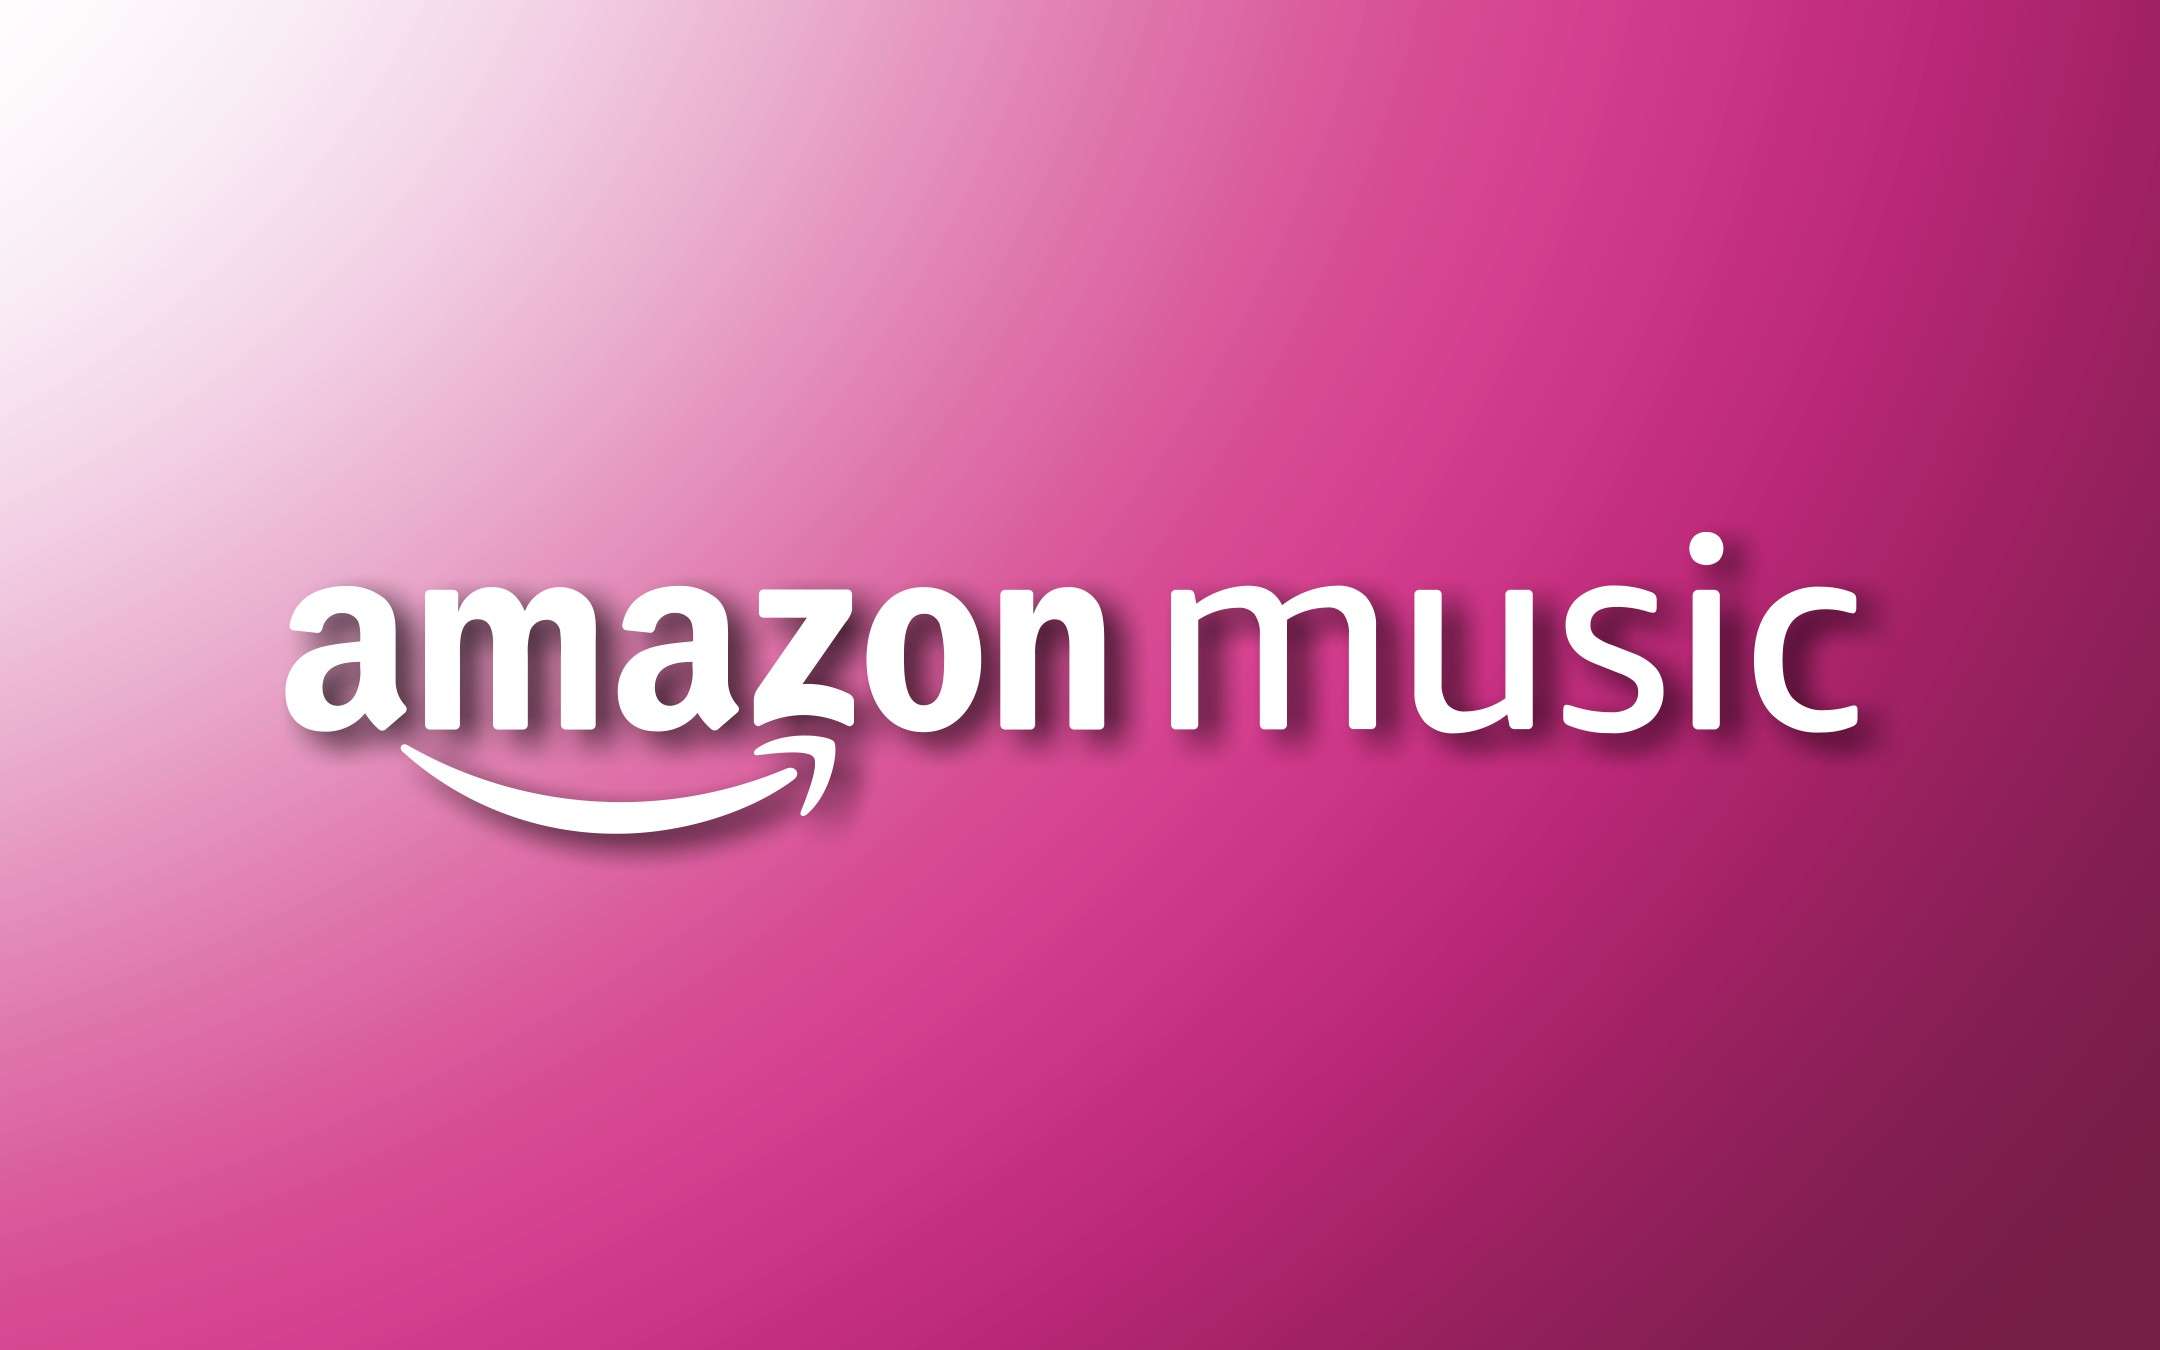 Musica GRATIS per 3 mesi, ecco come con Amazon Music